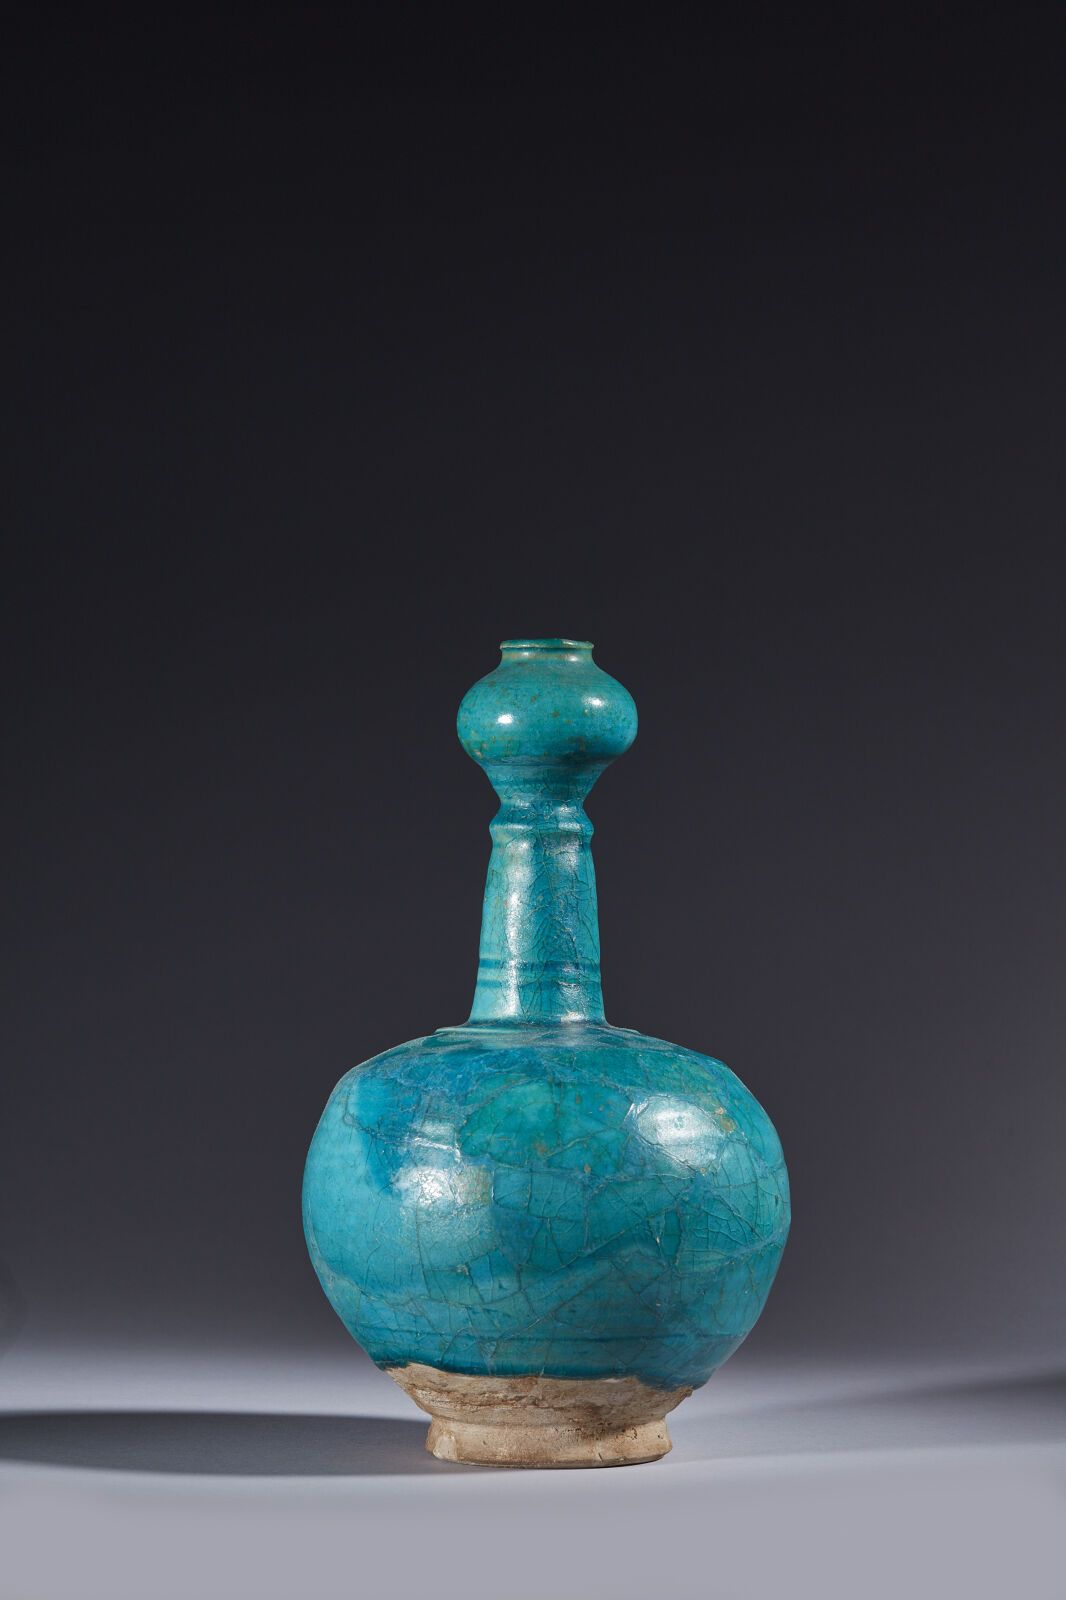 Null 伊朗，12-13 世纪
硅质陶瓷瓶，长颈，上有一个球茎，单色绿松石釉下的颈部有鏤刻的线条装饰。
(灯泡已被拆除，瓶身严重破损，轻微损坏已修复，可能还添&hellip;